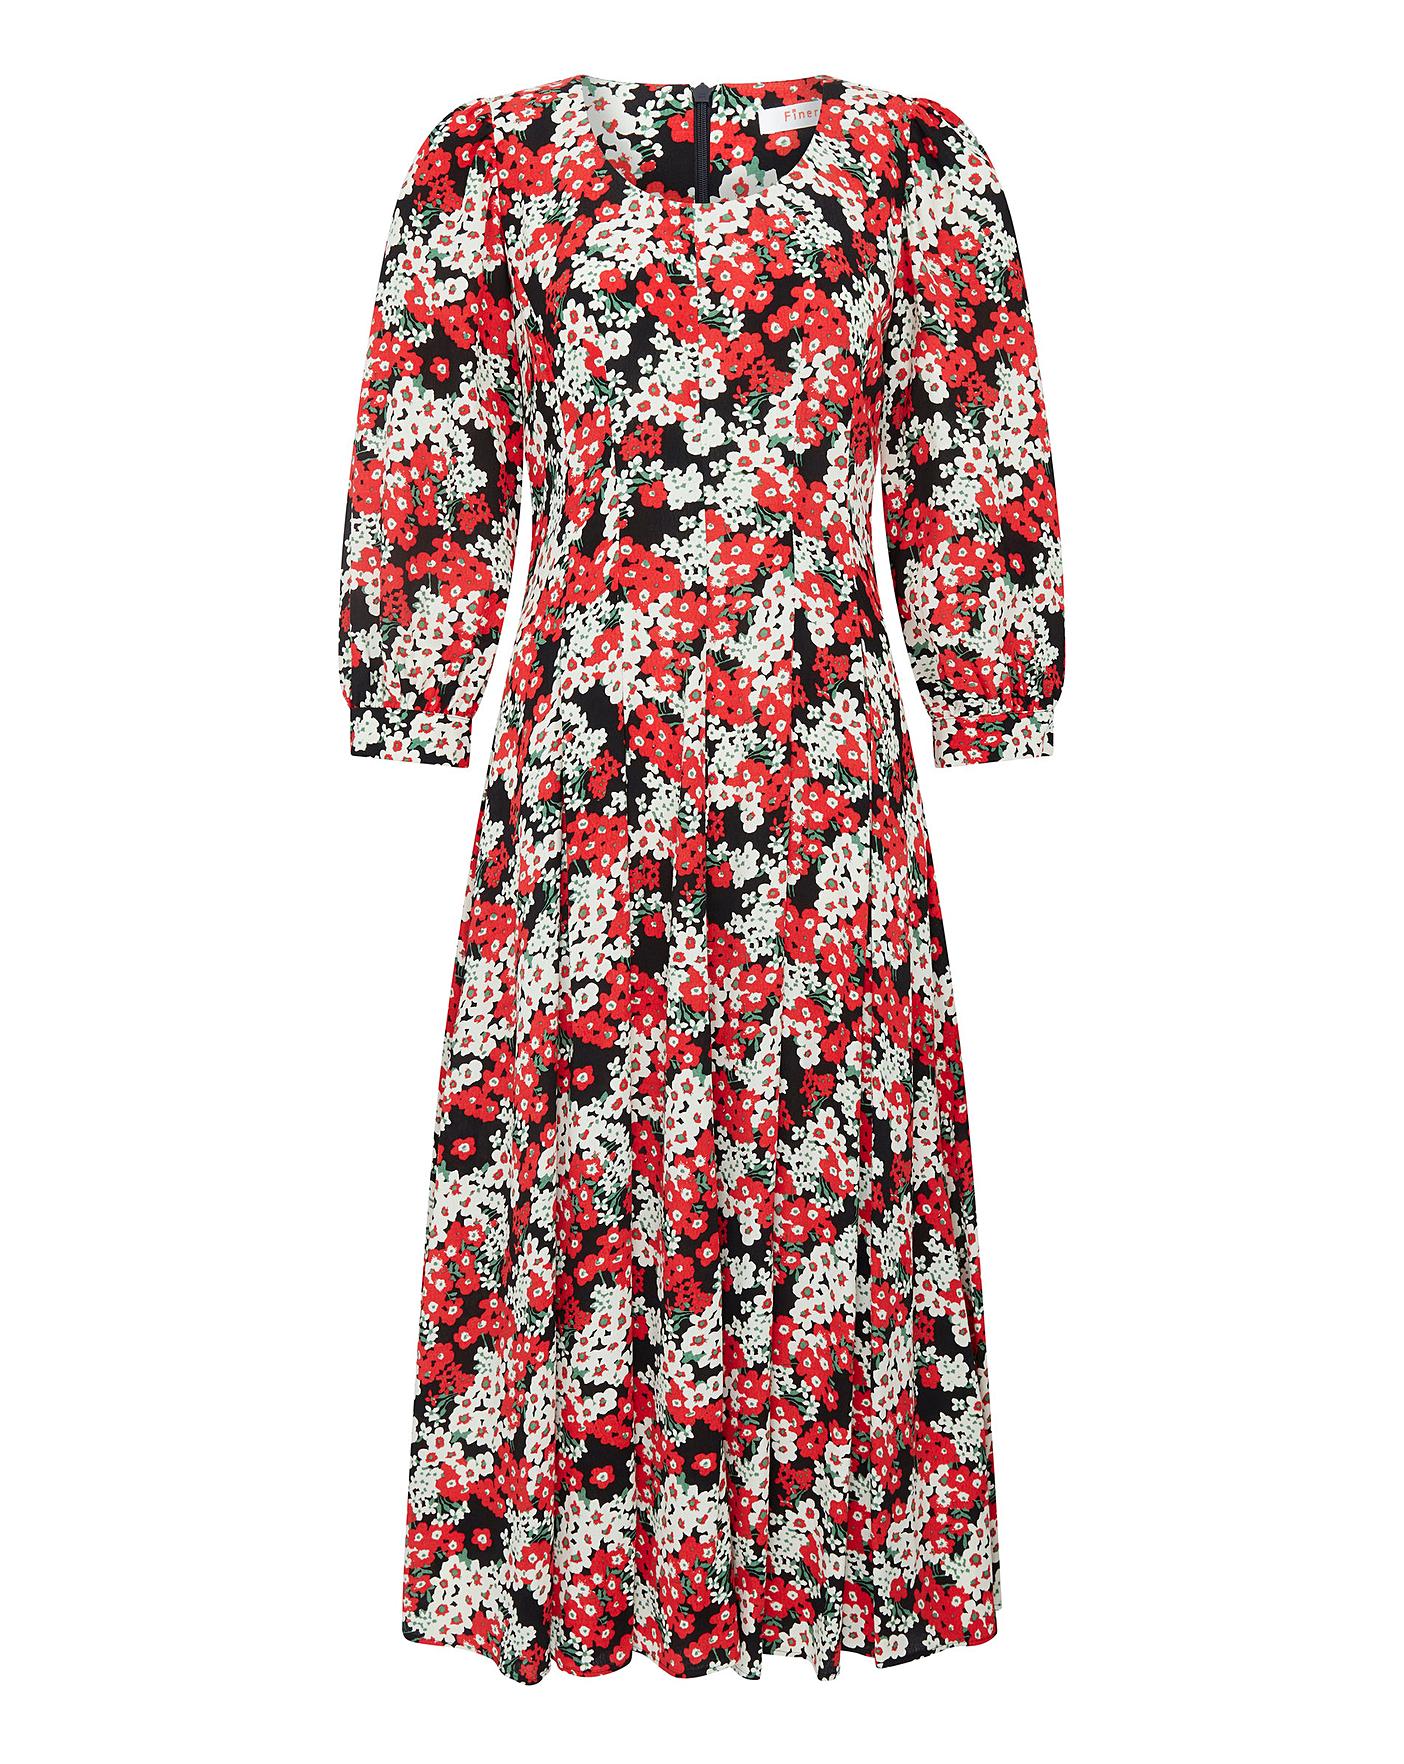 Finery London Millia Floral Dress | J D Williams